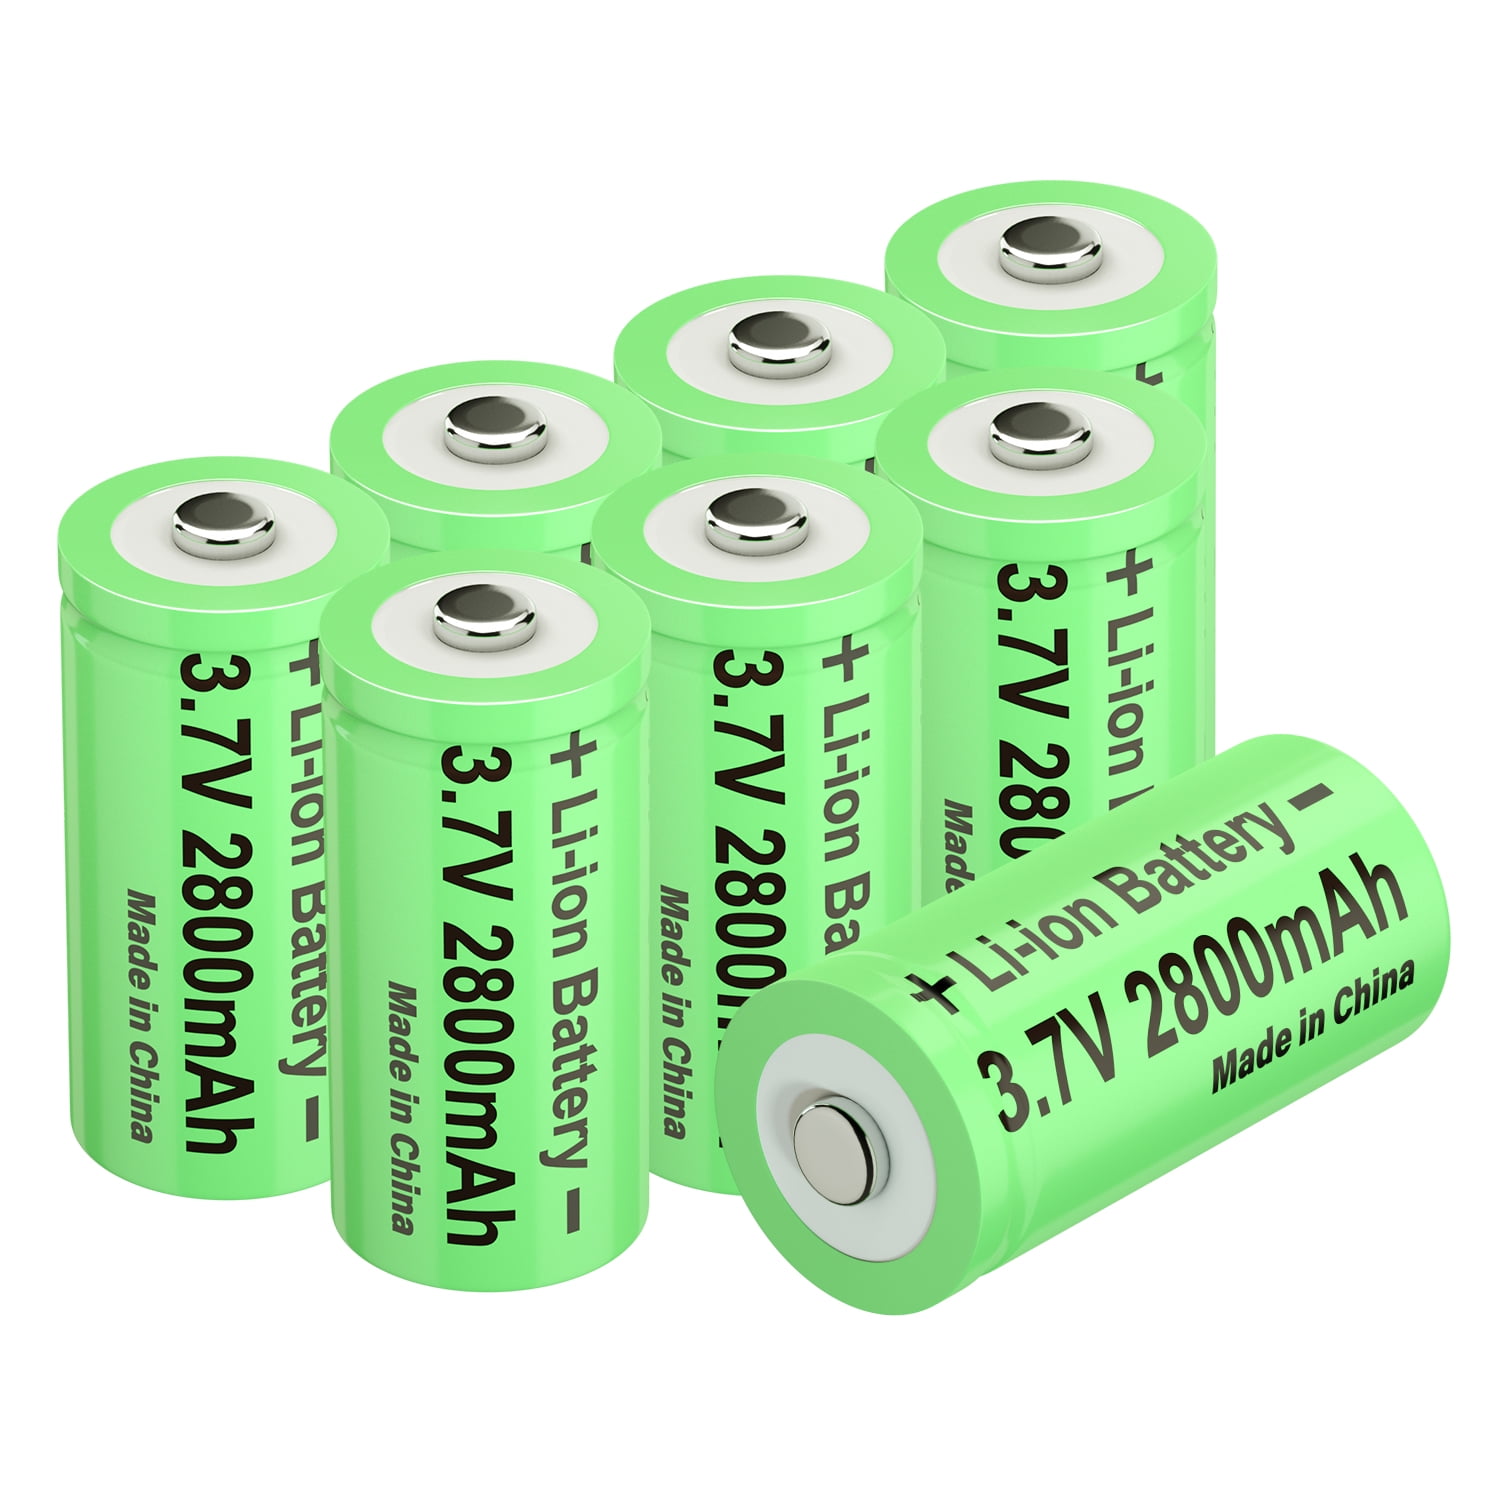 Comprar Batería 18650 de 3,7 V, Baterías Recargables de Litio para  Linterna, Célula recargable para faros, juguetes, cámaras digitales,  Radios, timbres, 4 Uds.